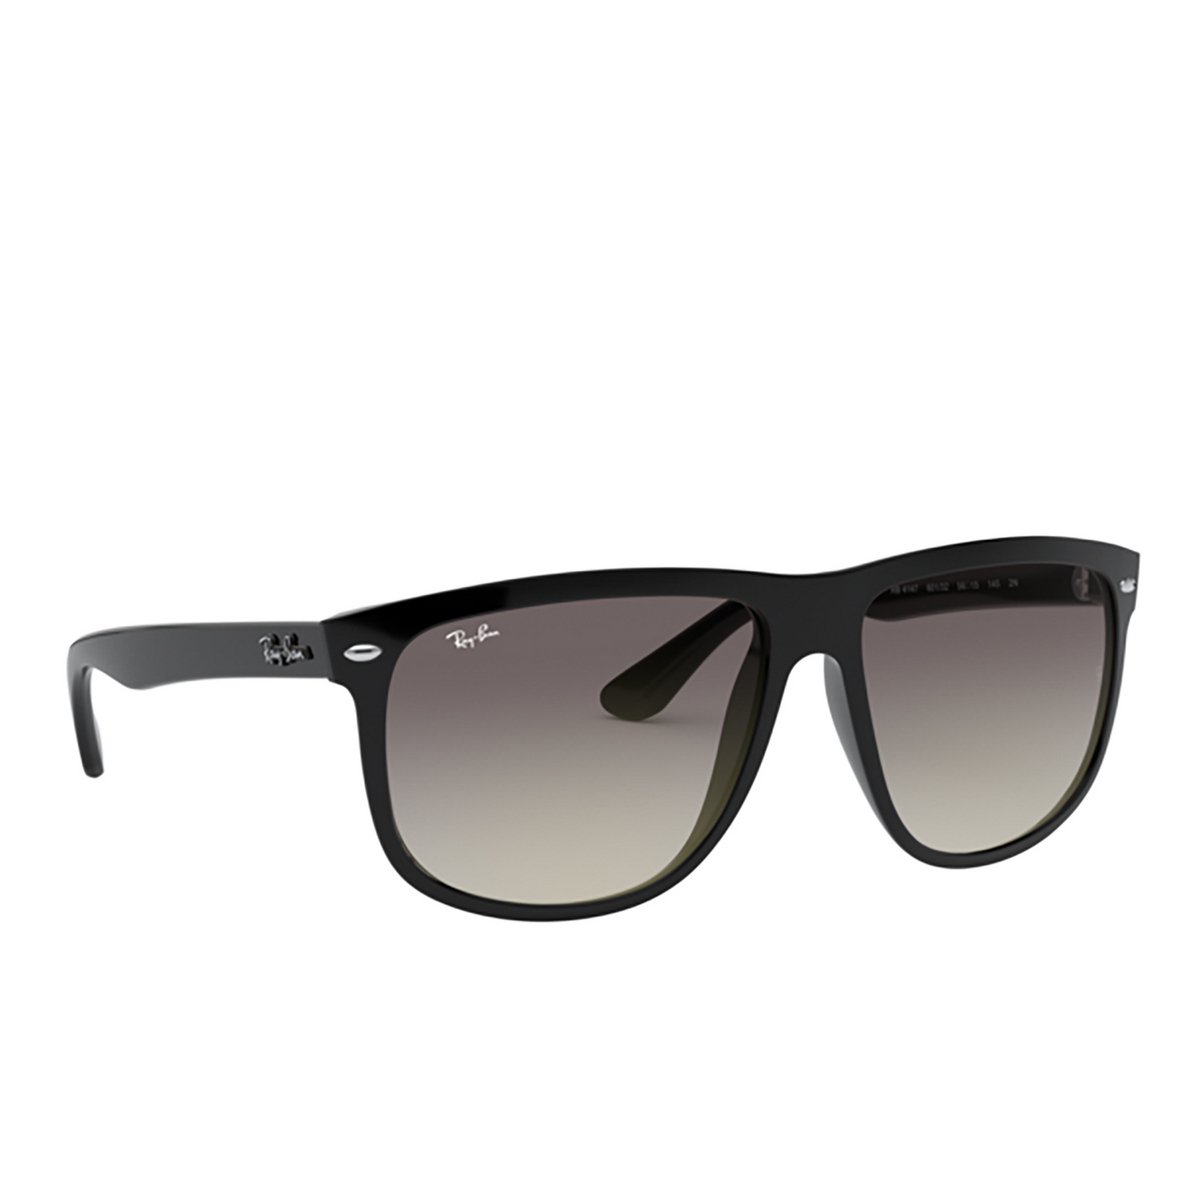 Ray-Ban BOYFRIEND Sunglasses 601/32 Black - three-quarters view